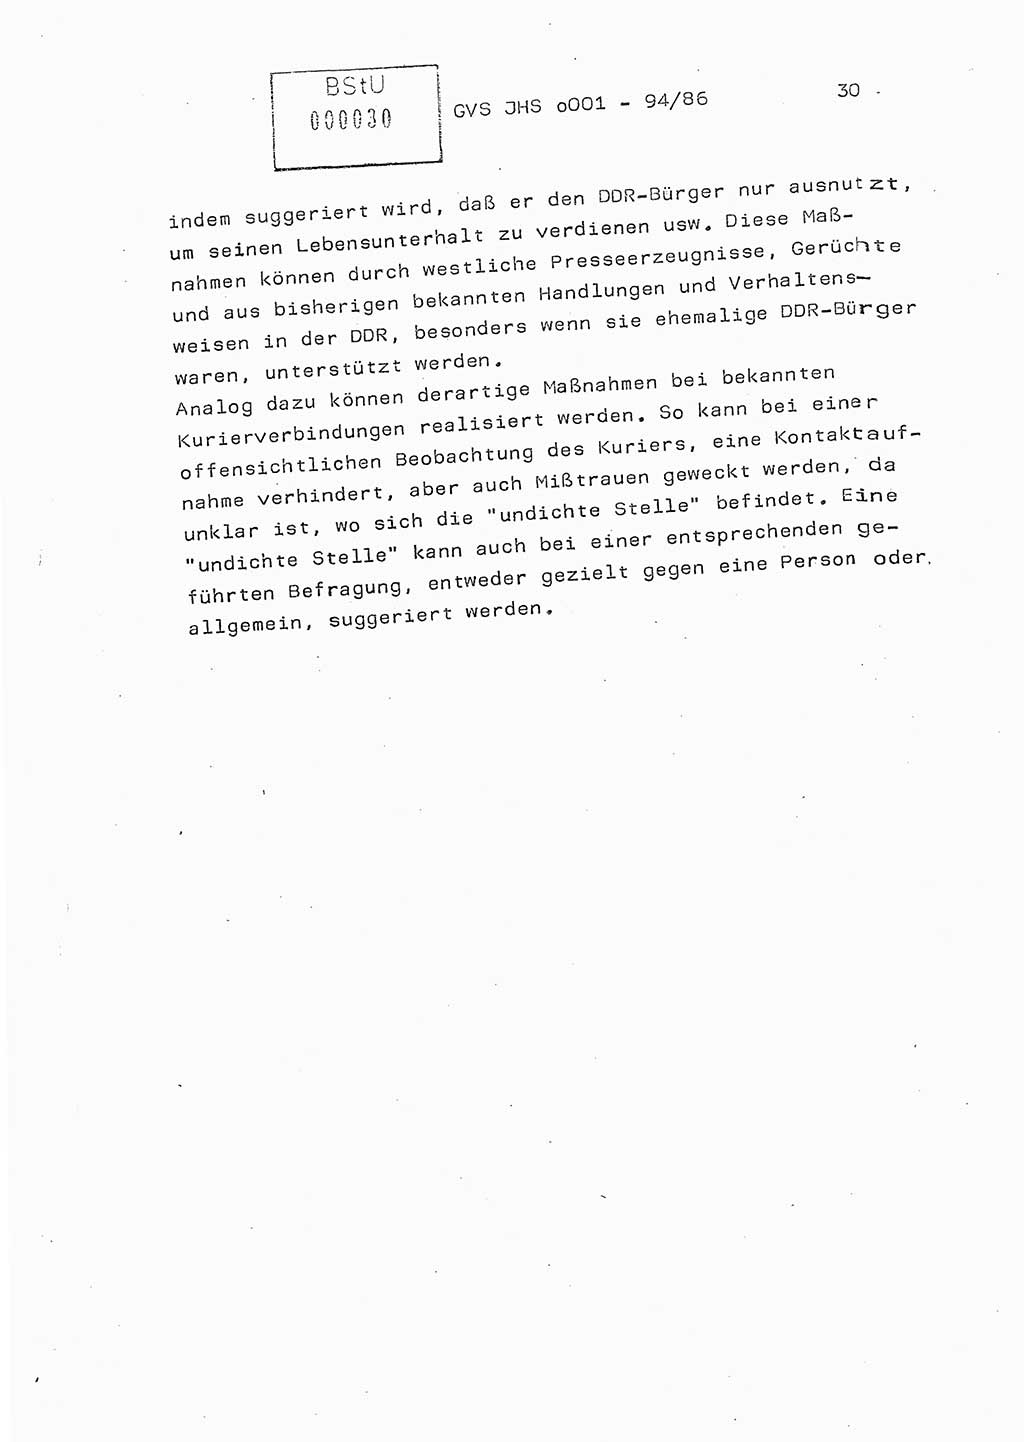 Diplomarbeit Oberleutnant Volkmar Pechmann (HA ⅩⅩ/5), Ministerium für Staatssicherheit (MfS) [Deutsche Demokratische Republik (DDR)], Juristische Hochschule (JHS), Geheime Verschlußsache (GVS) o001-94/86, Potsdam 1986, Blatt 30 (Dipl.-Arb. MfS DDR JHS GVS o001-94/86 1986, Bl. 30)